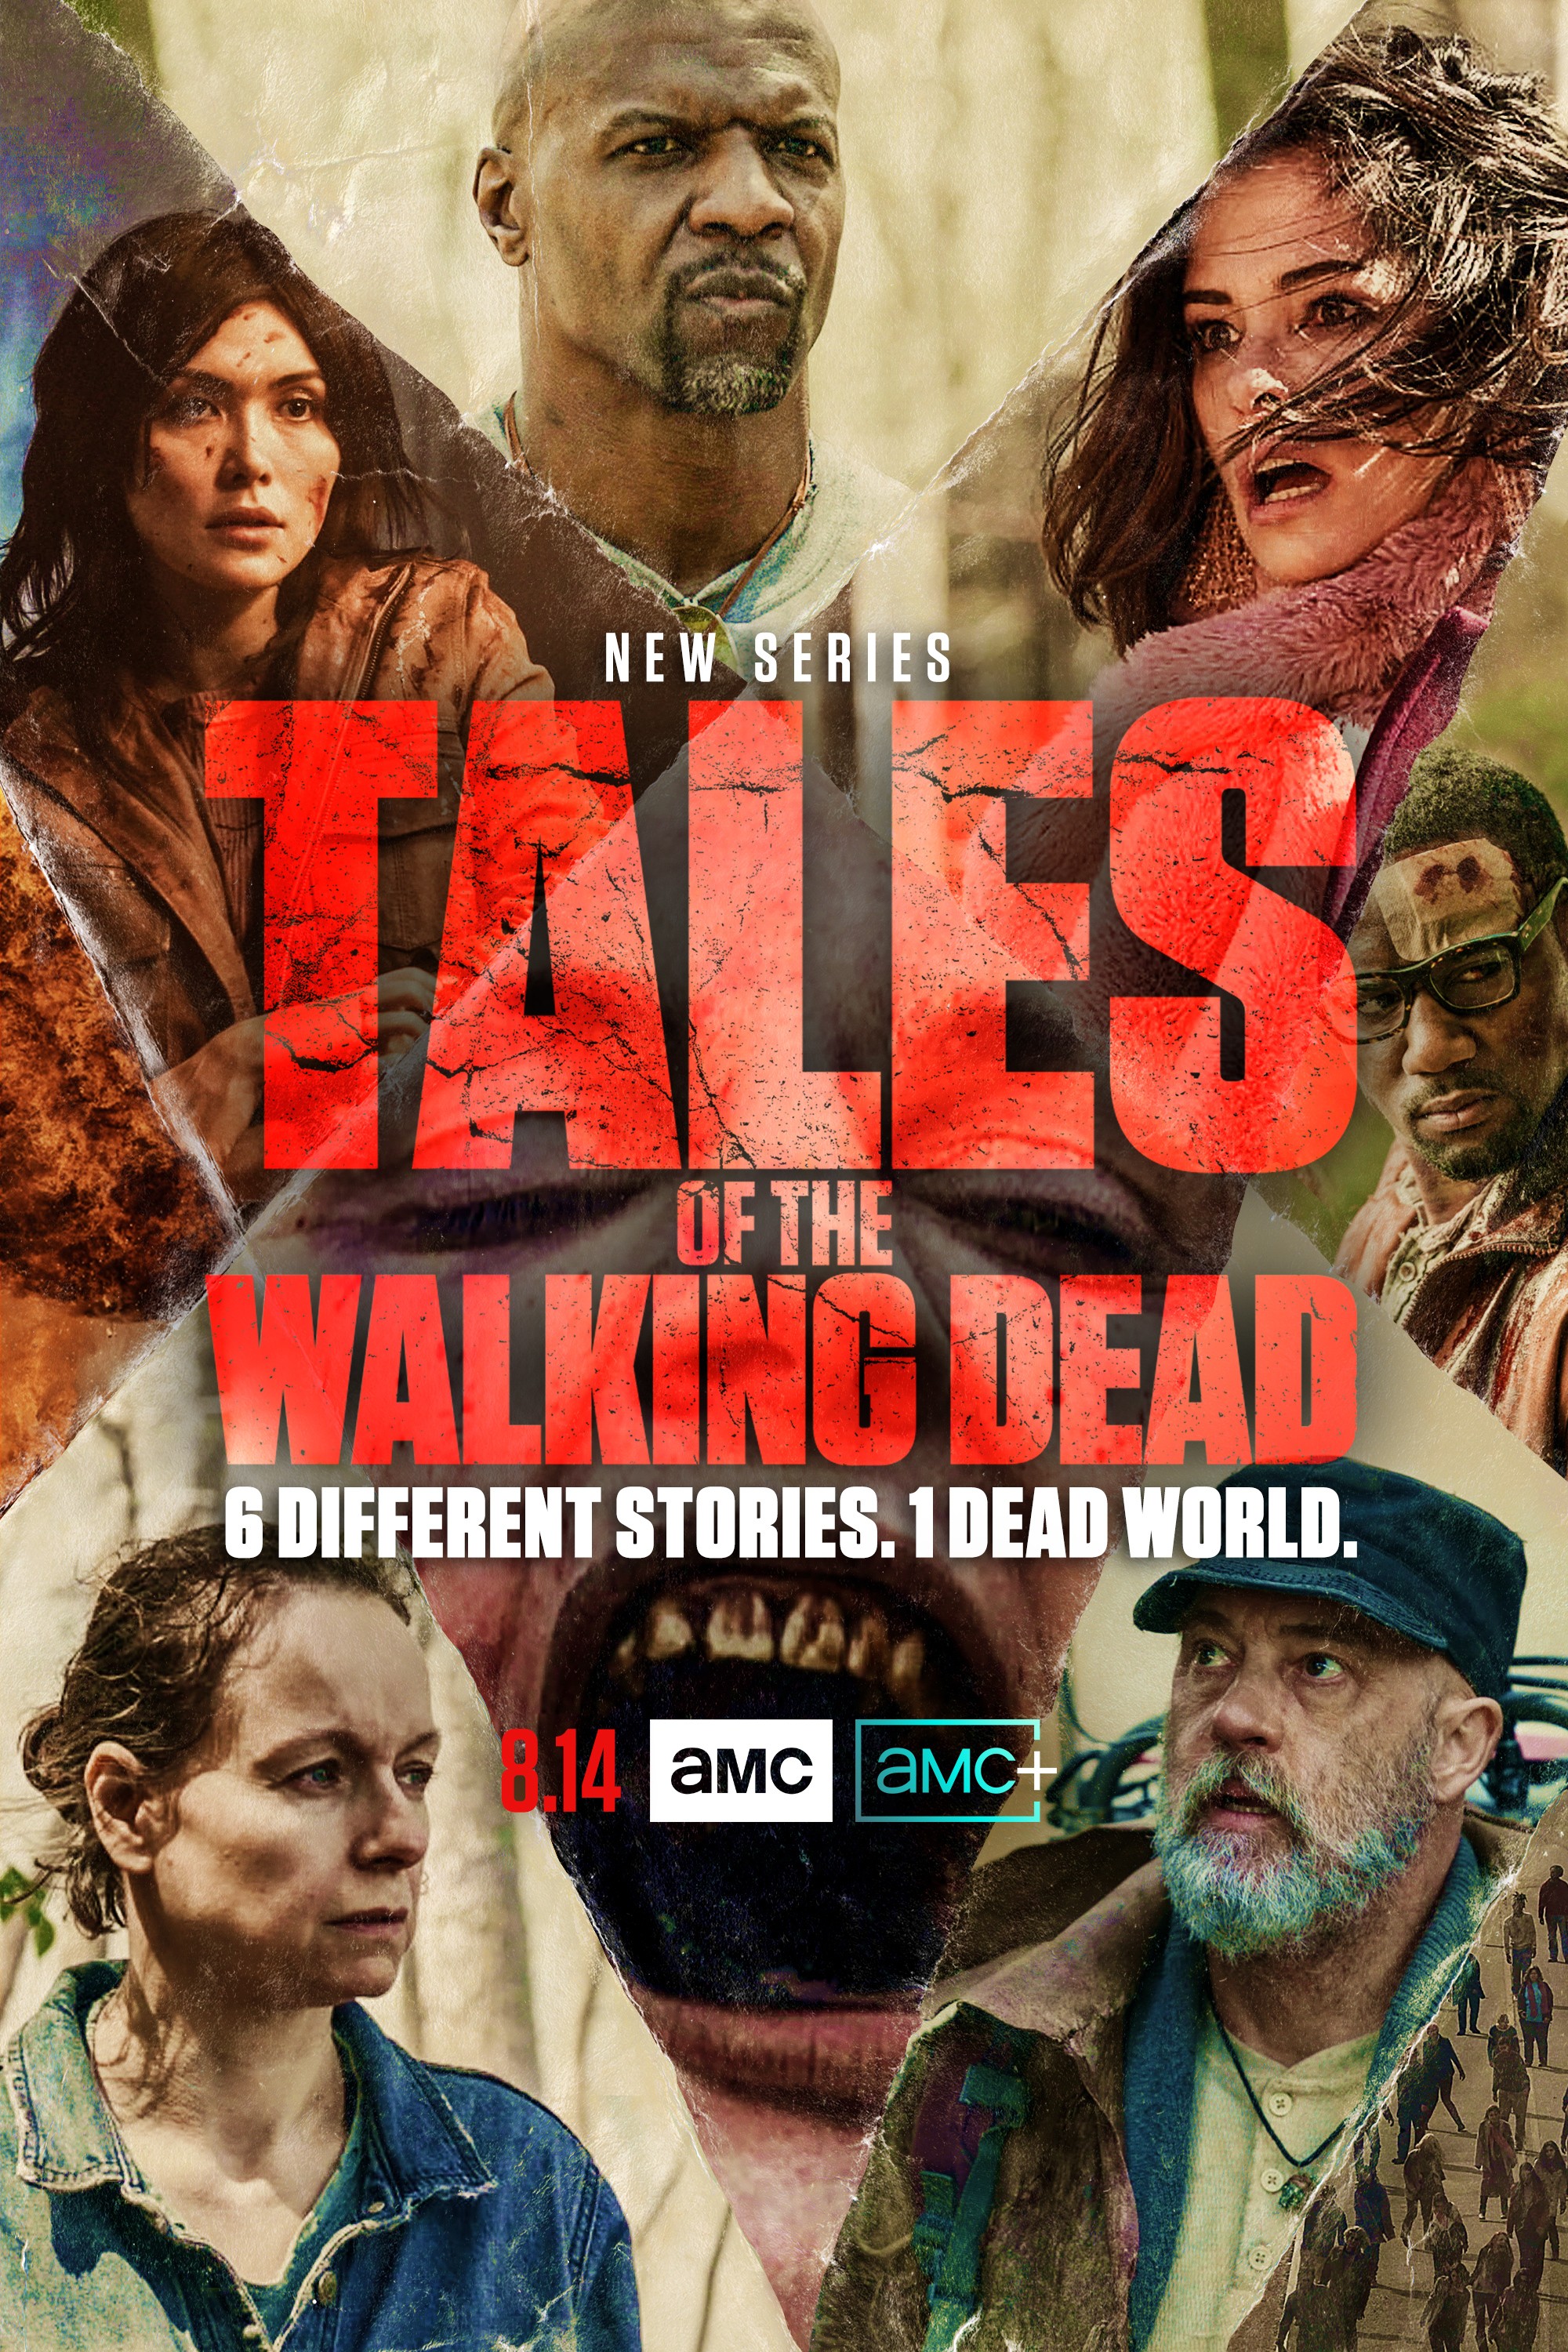 Tales of the Walking Dead - Wikipedia